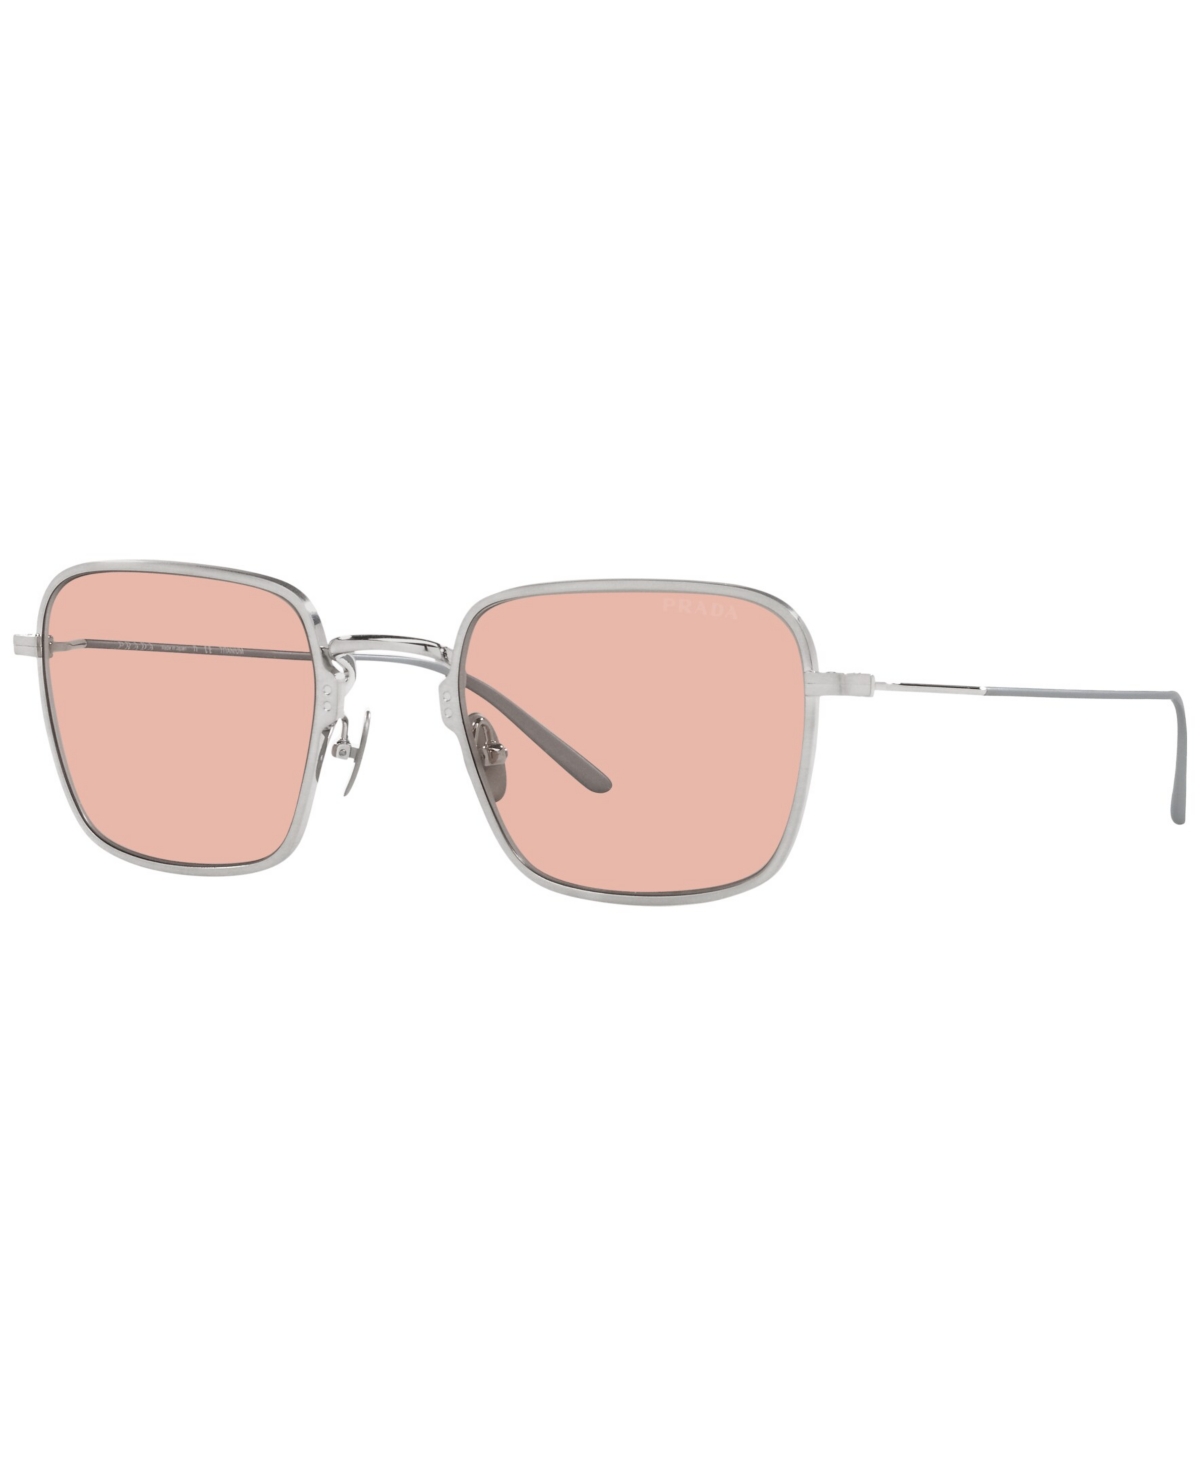 Prada Men's Sunglasses, Pr 54ws 52 In Satin Titanium